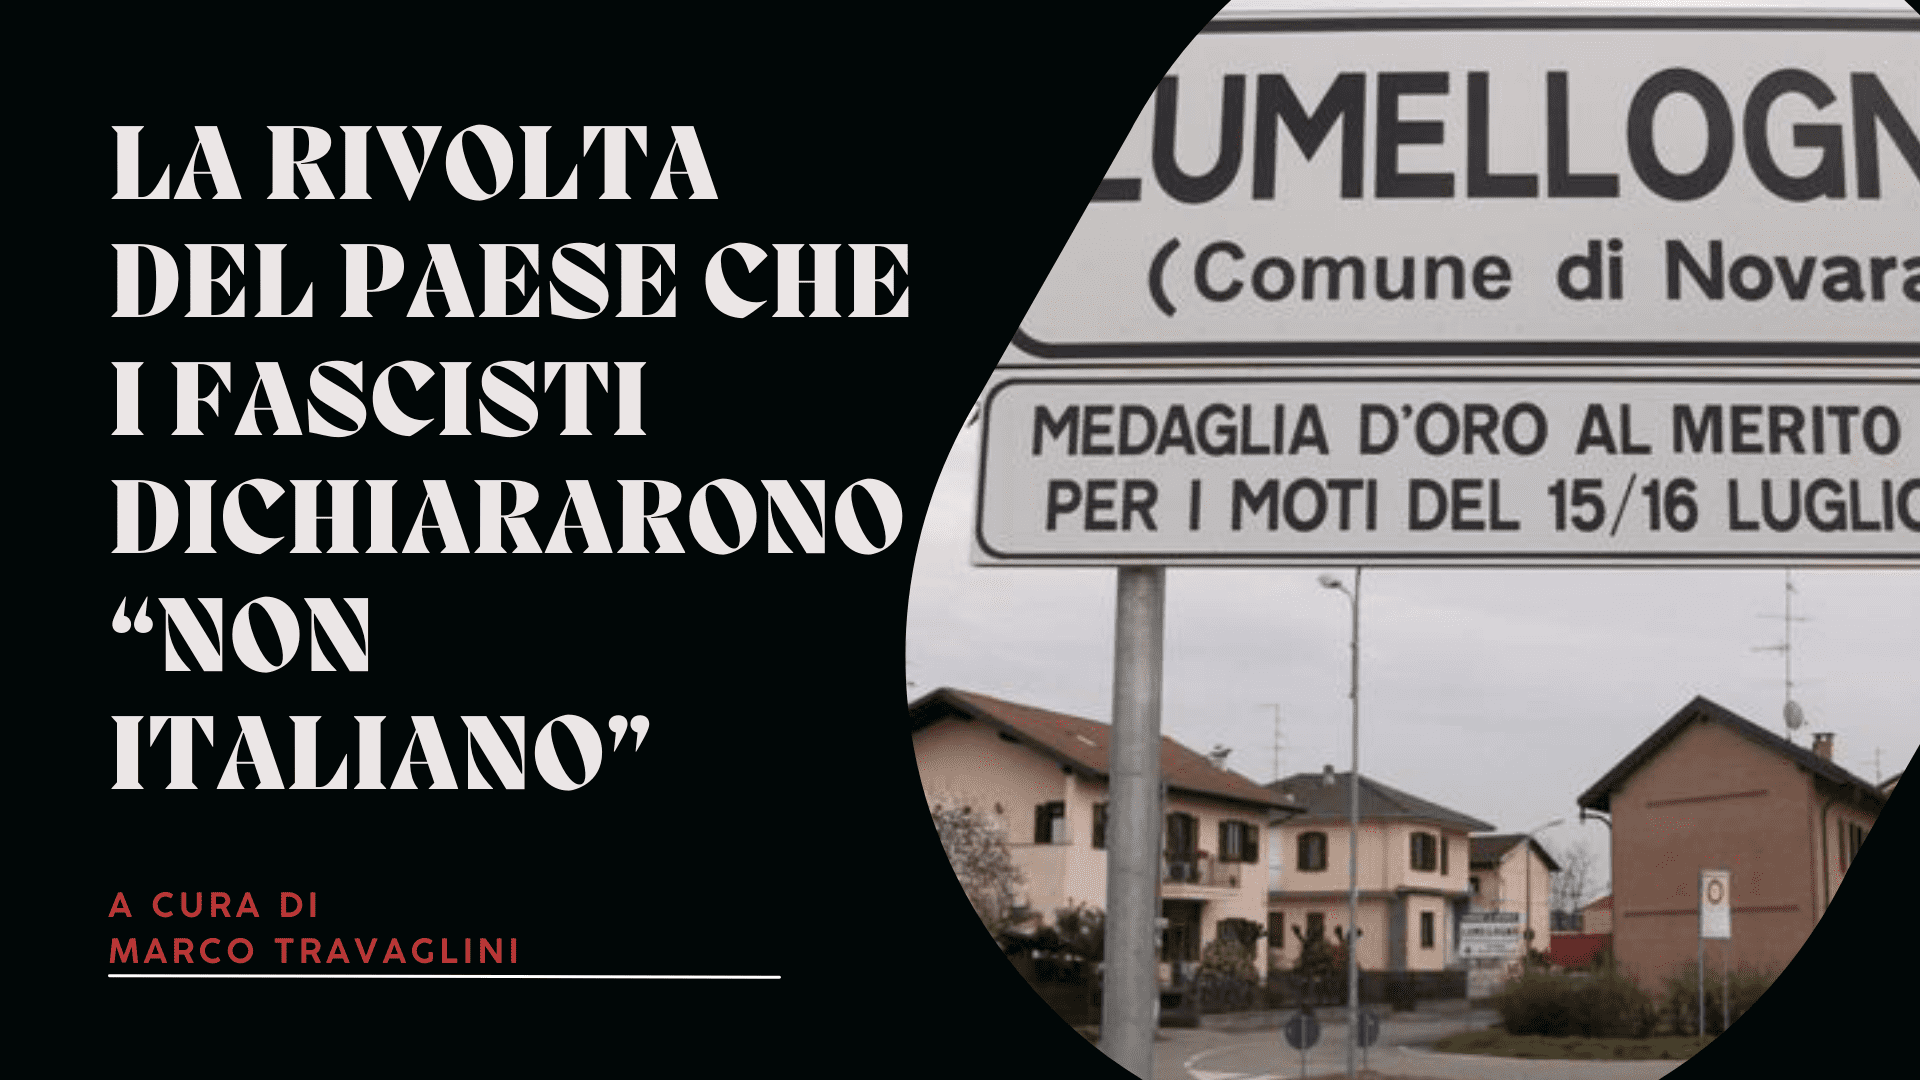 La rivolta del paese che i fascisti dichiararono “non italiano”